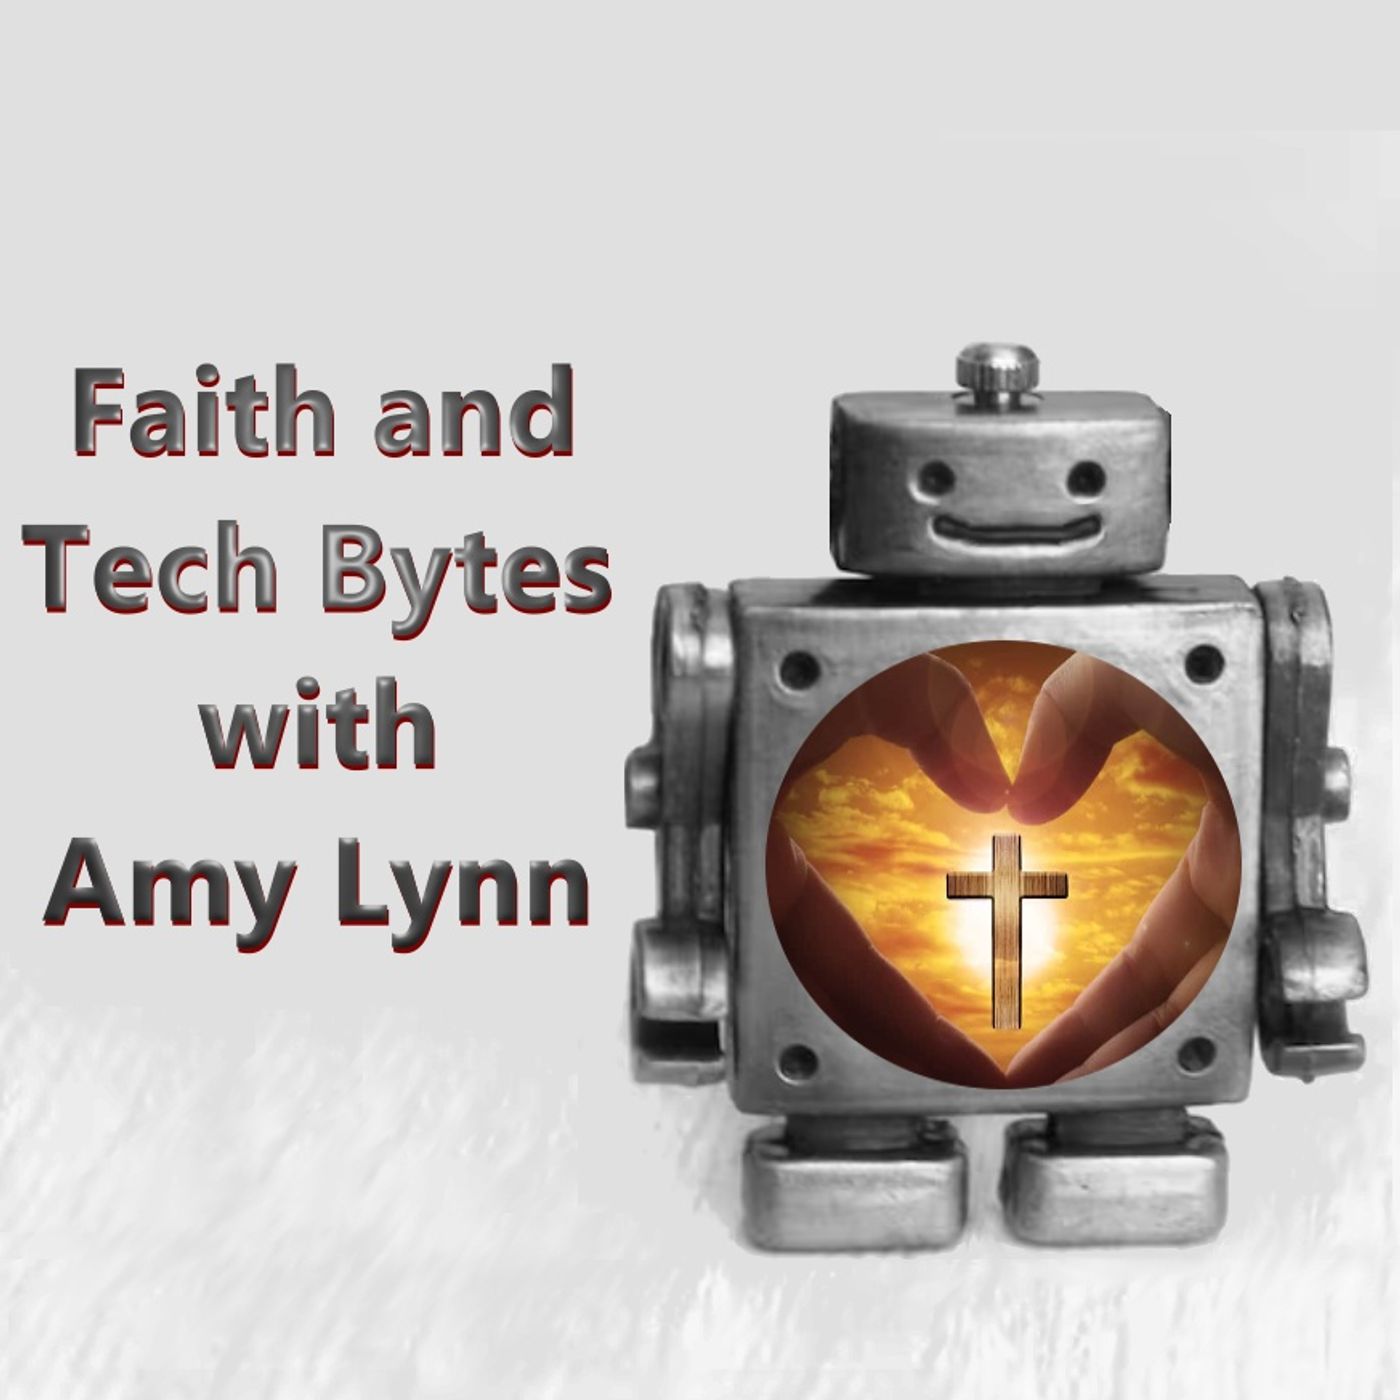 Faith and Tech Bytes with Amy Lynn